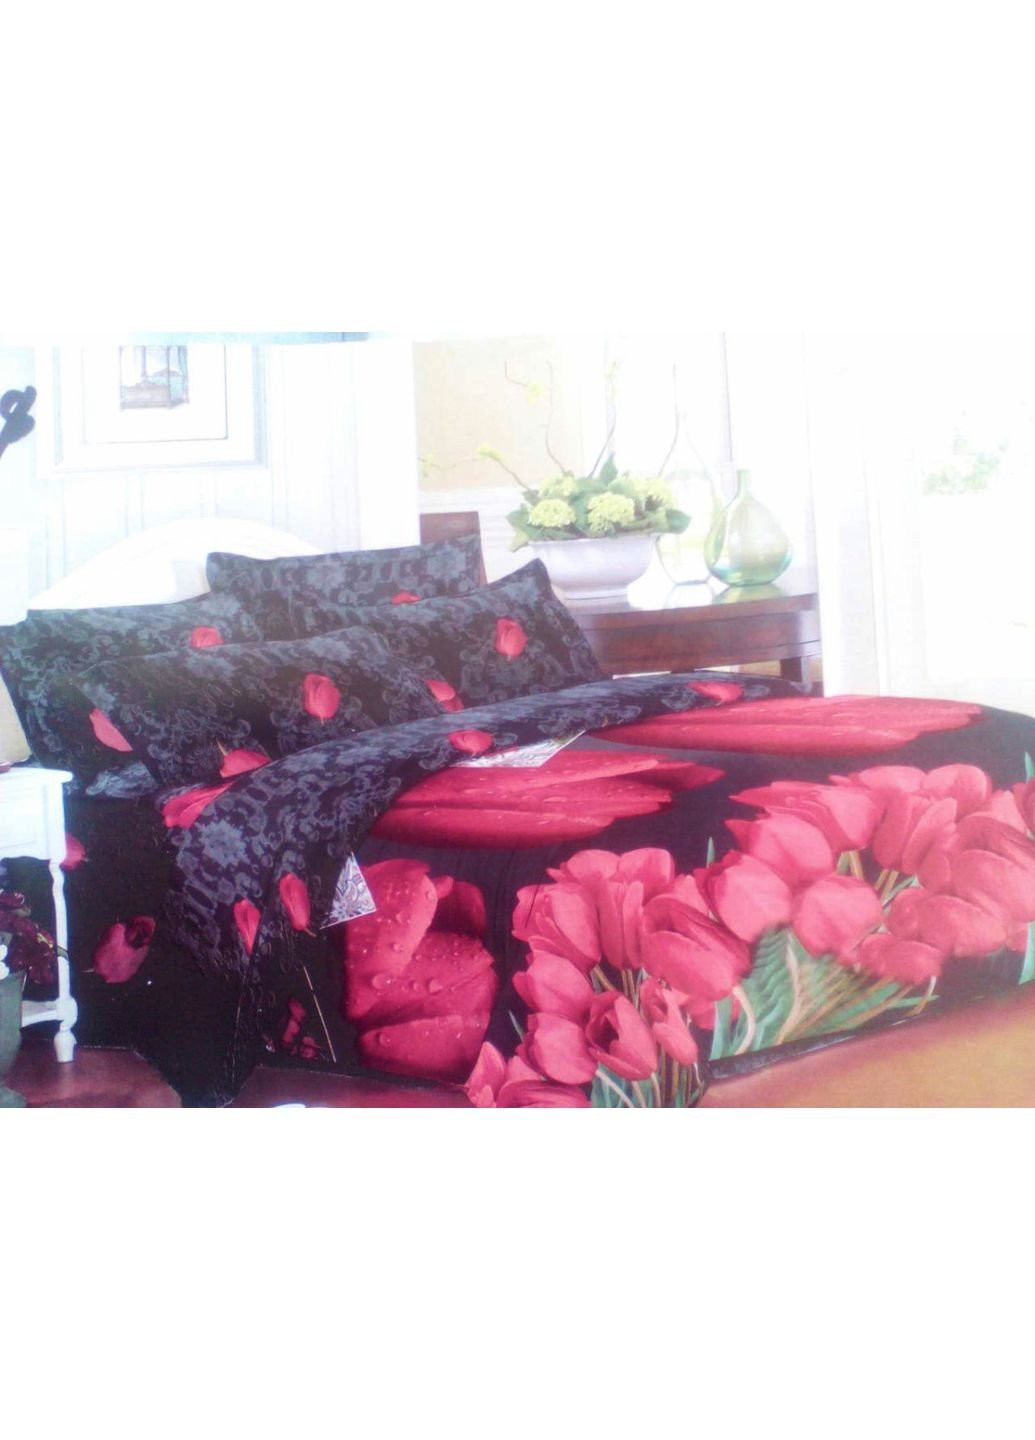 Комплект постельного белья от украинского производителя Polycotton Двуспальный 90927 Moda (253658650)